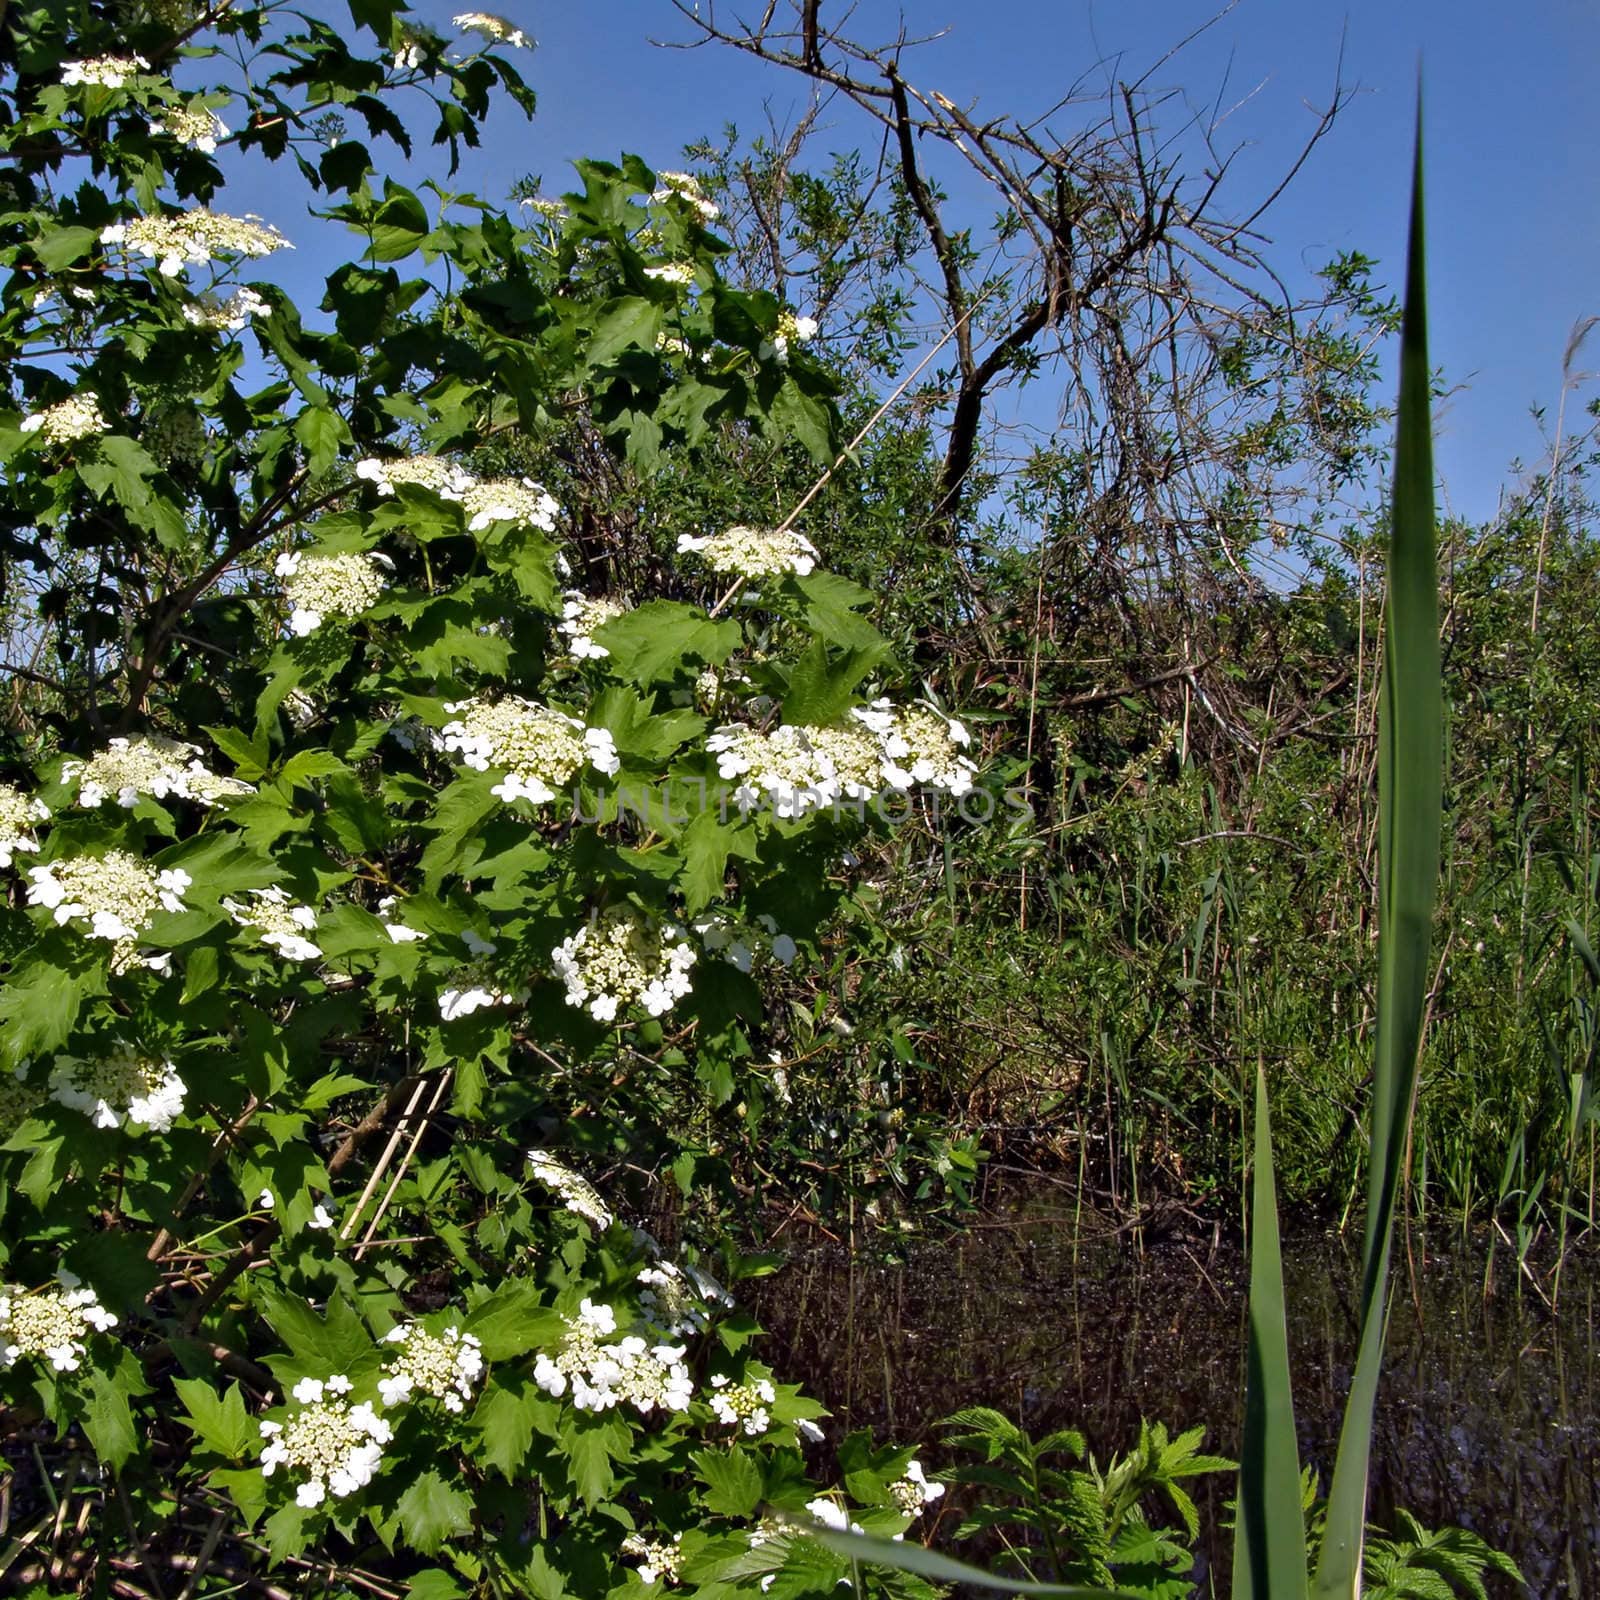 flower of the viburnum near marsh